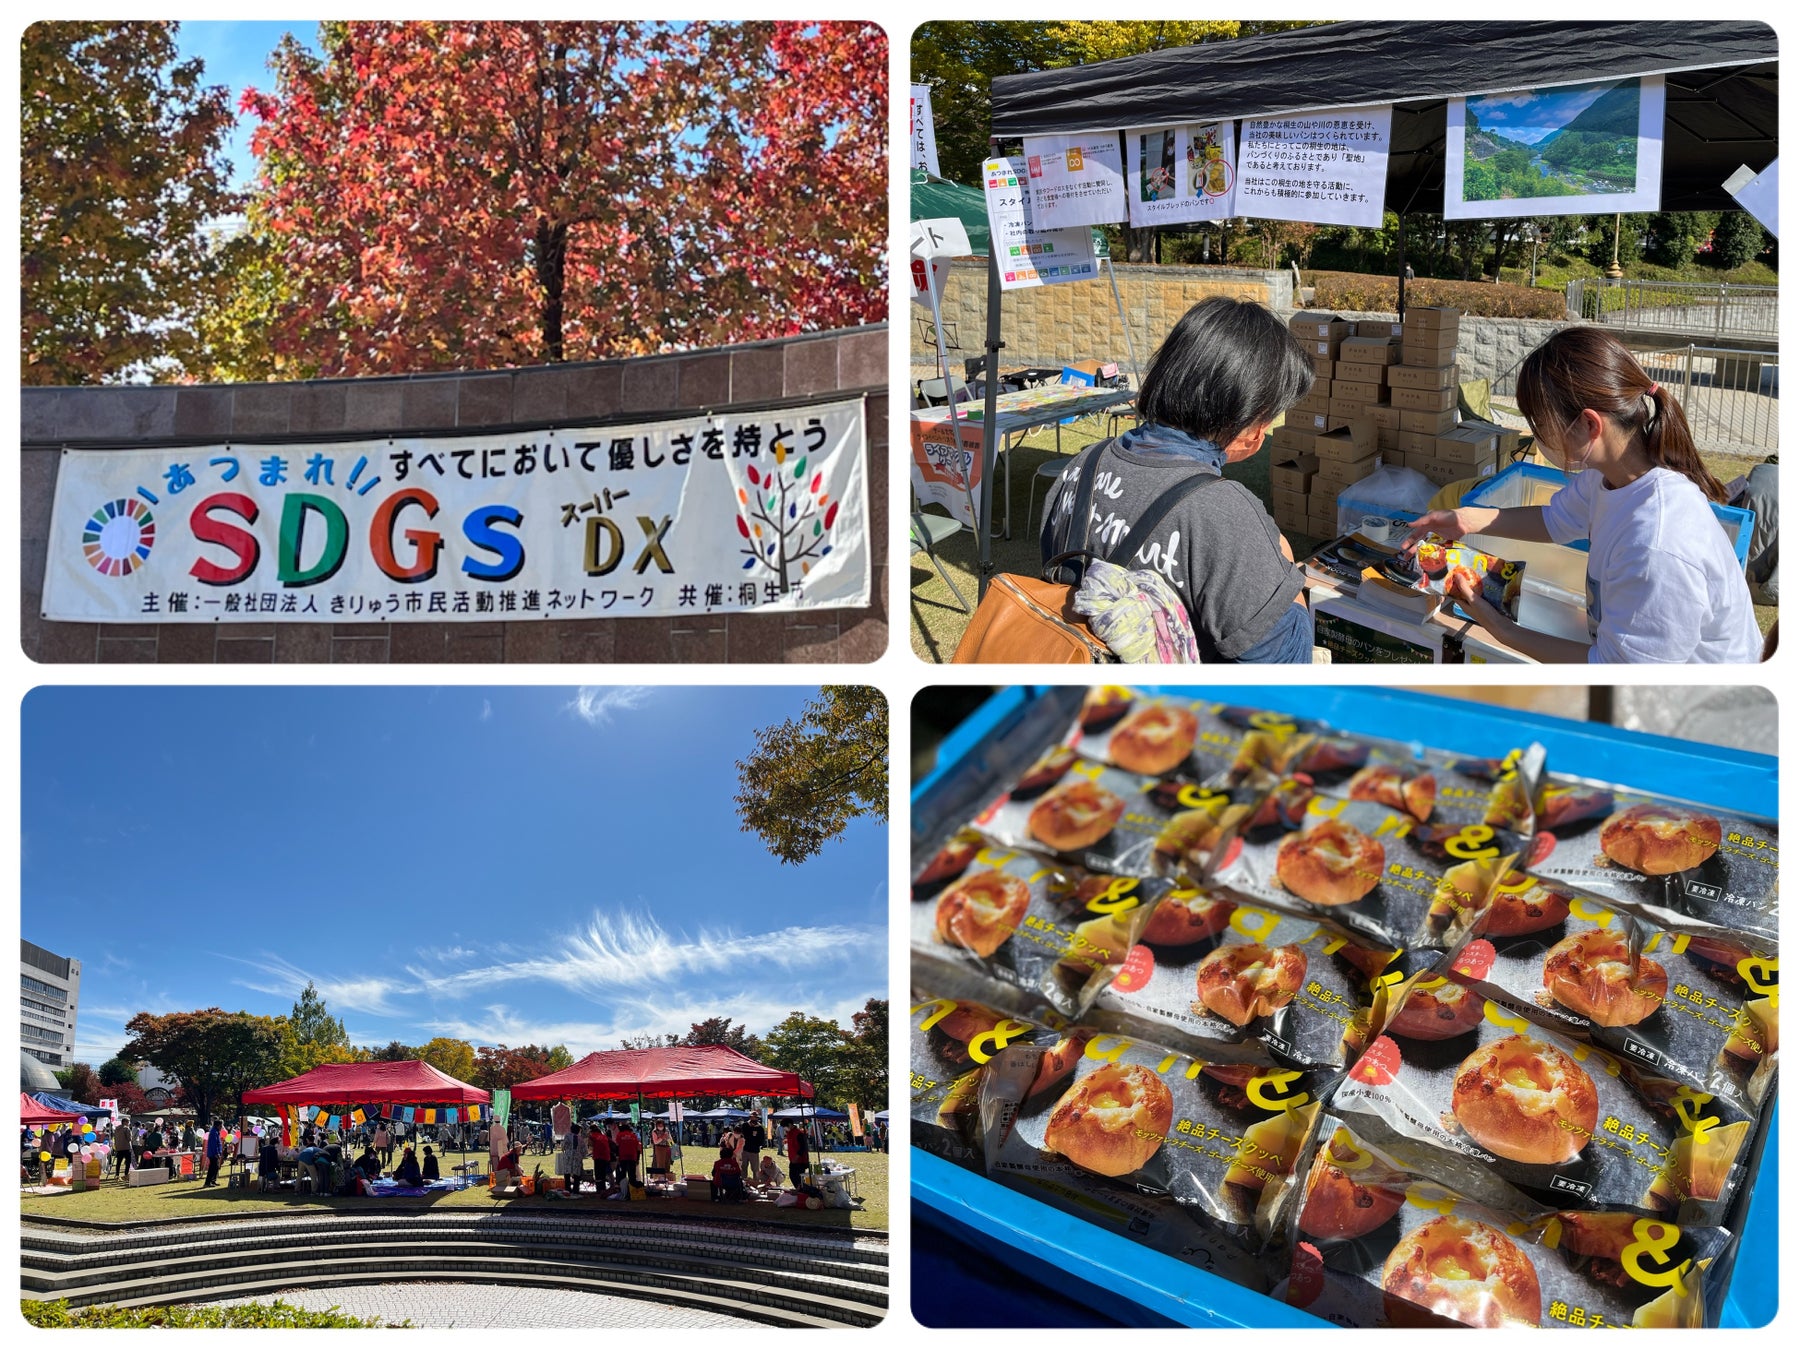 桐生市民活動推進センターゆい主催のSDGs取り組み推進イベントへロスパンを寄付のサブ画像1